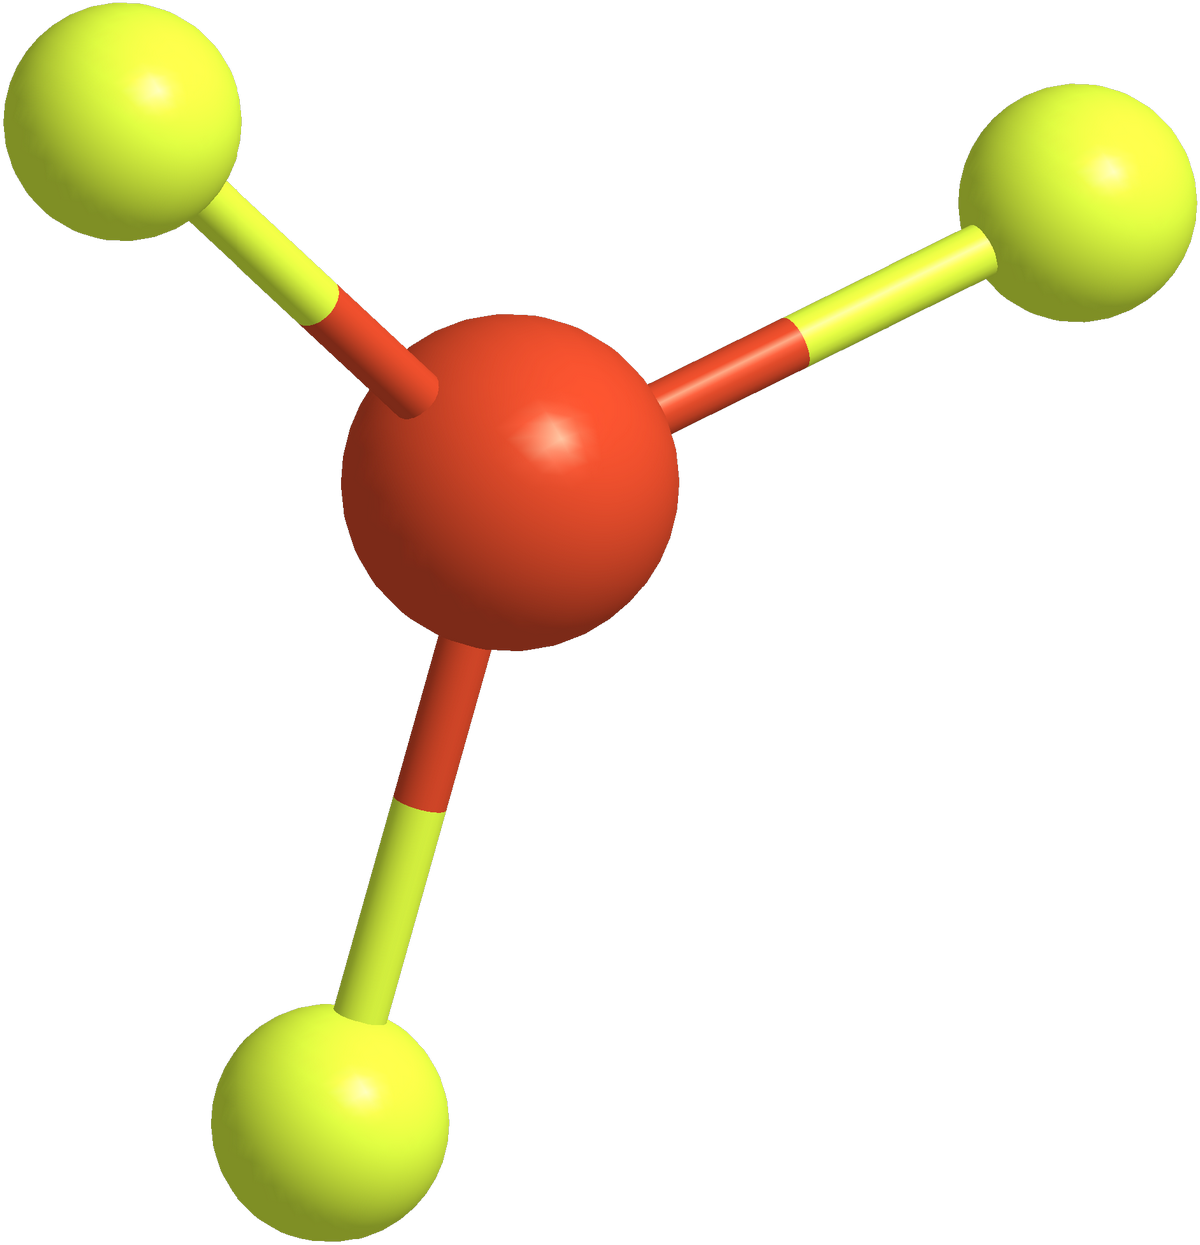 Scl2 модель молекулы. Ch3f молекула. Макет молекулы. Co модель молекулы. Молекула из пластилина